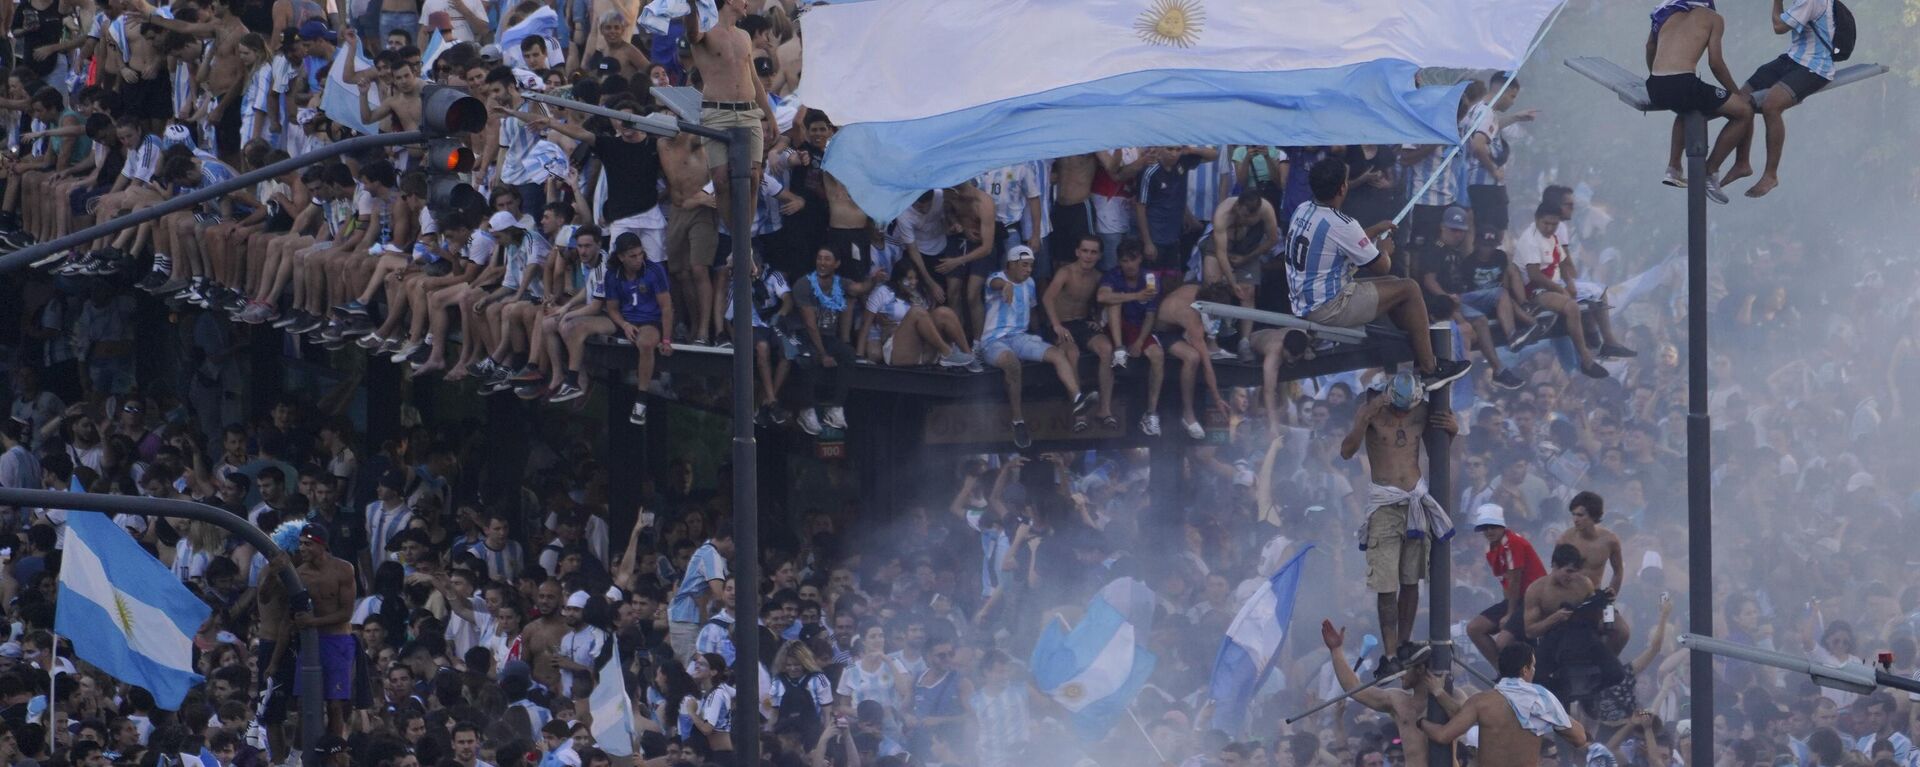 Аргентински навијачи славе победу тима на Светском првенству у Буенос Ајресу 2022. - Sputnik Србија, 1920, 19.12.2022